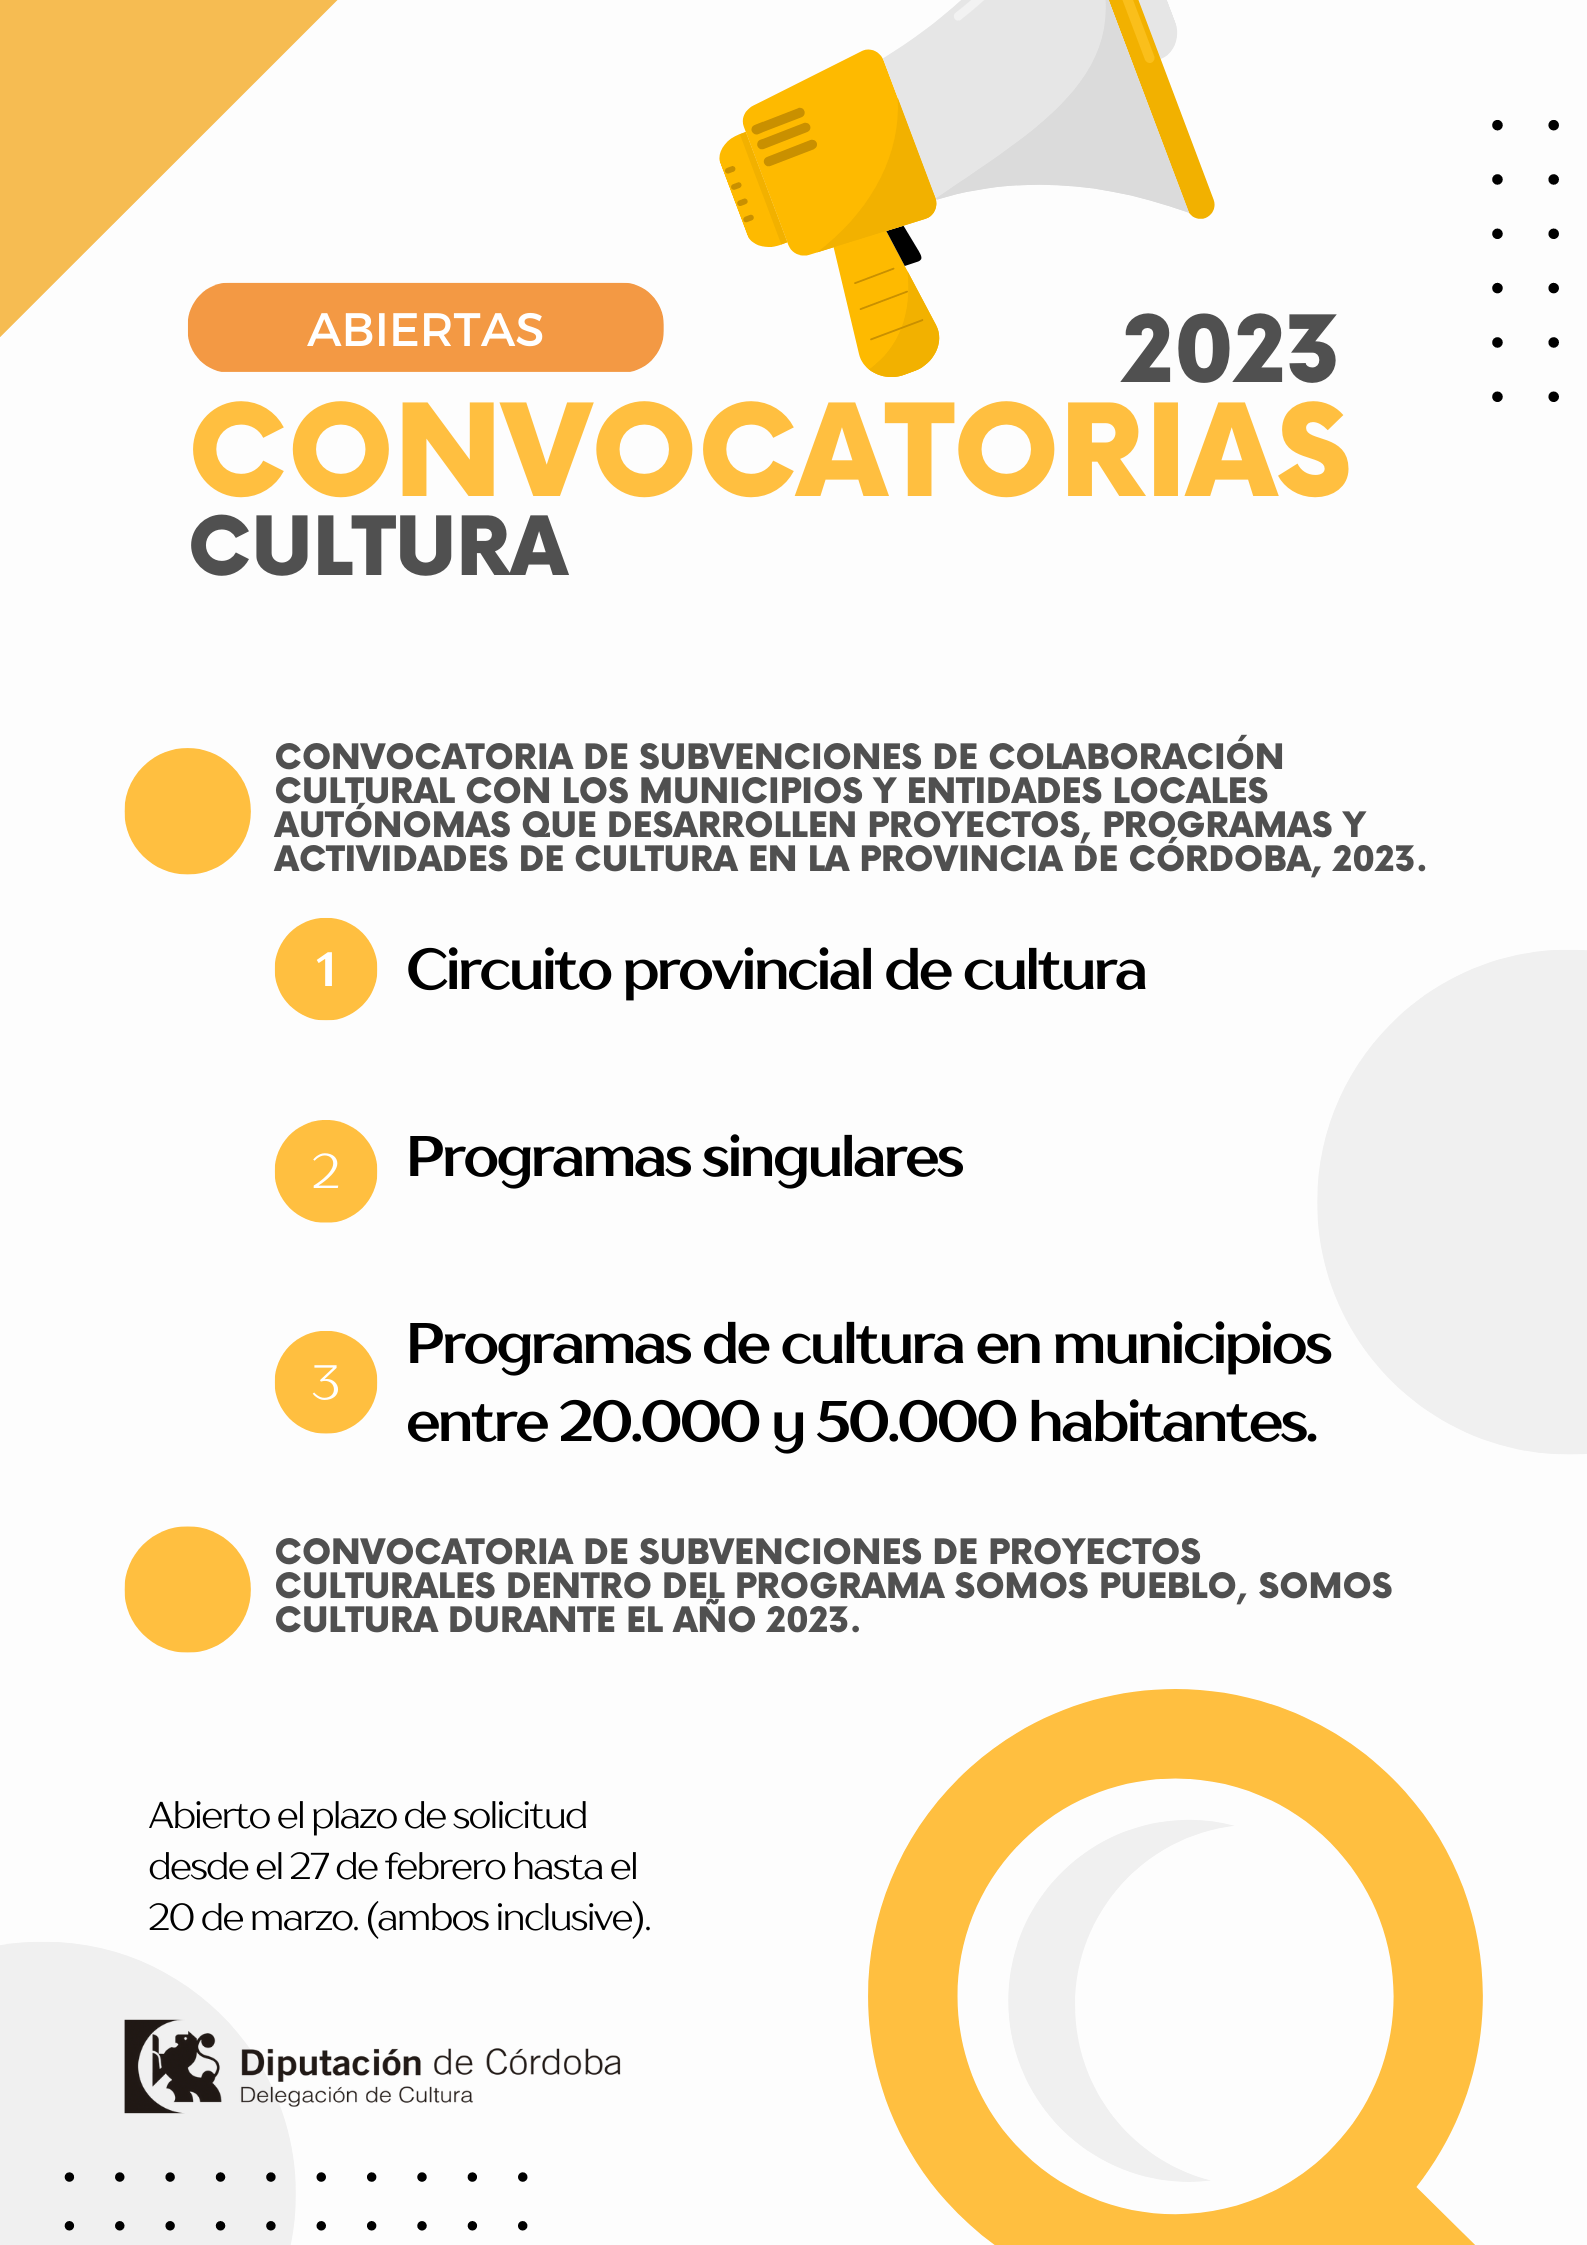 Convocatorias de subvenciones para proyectos culturales 2023